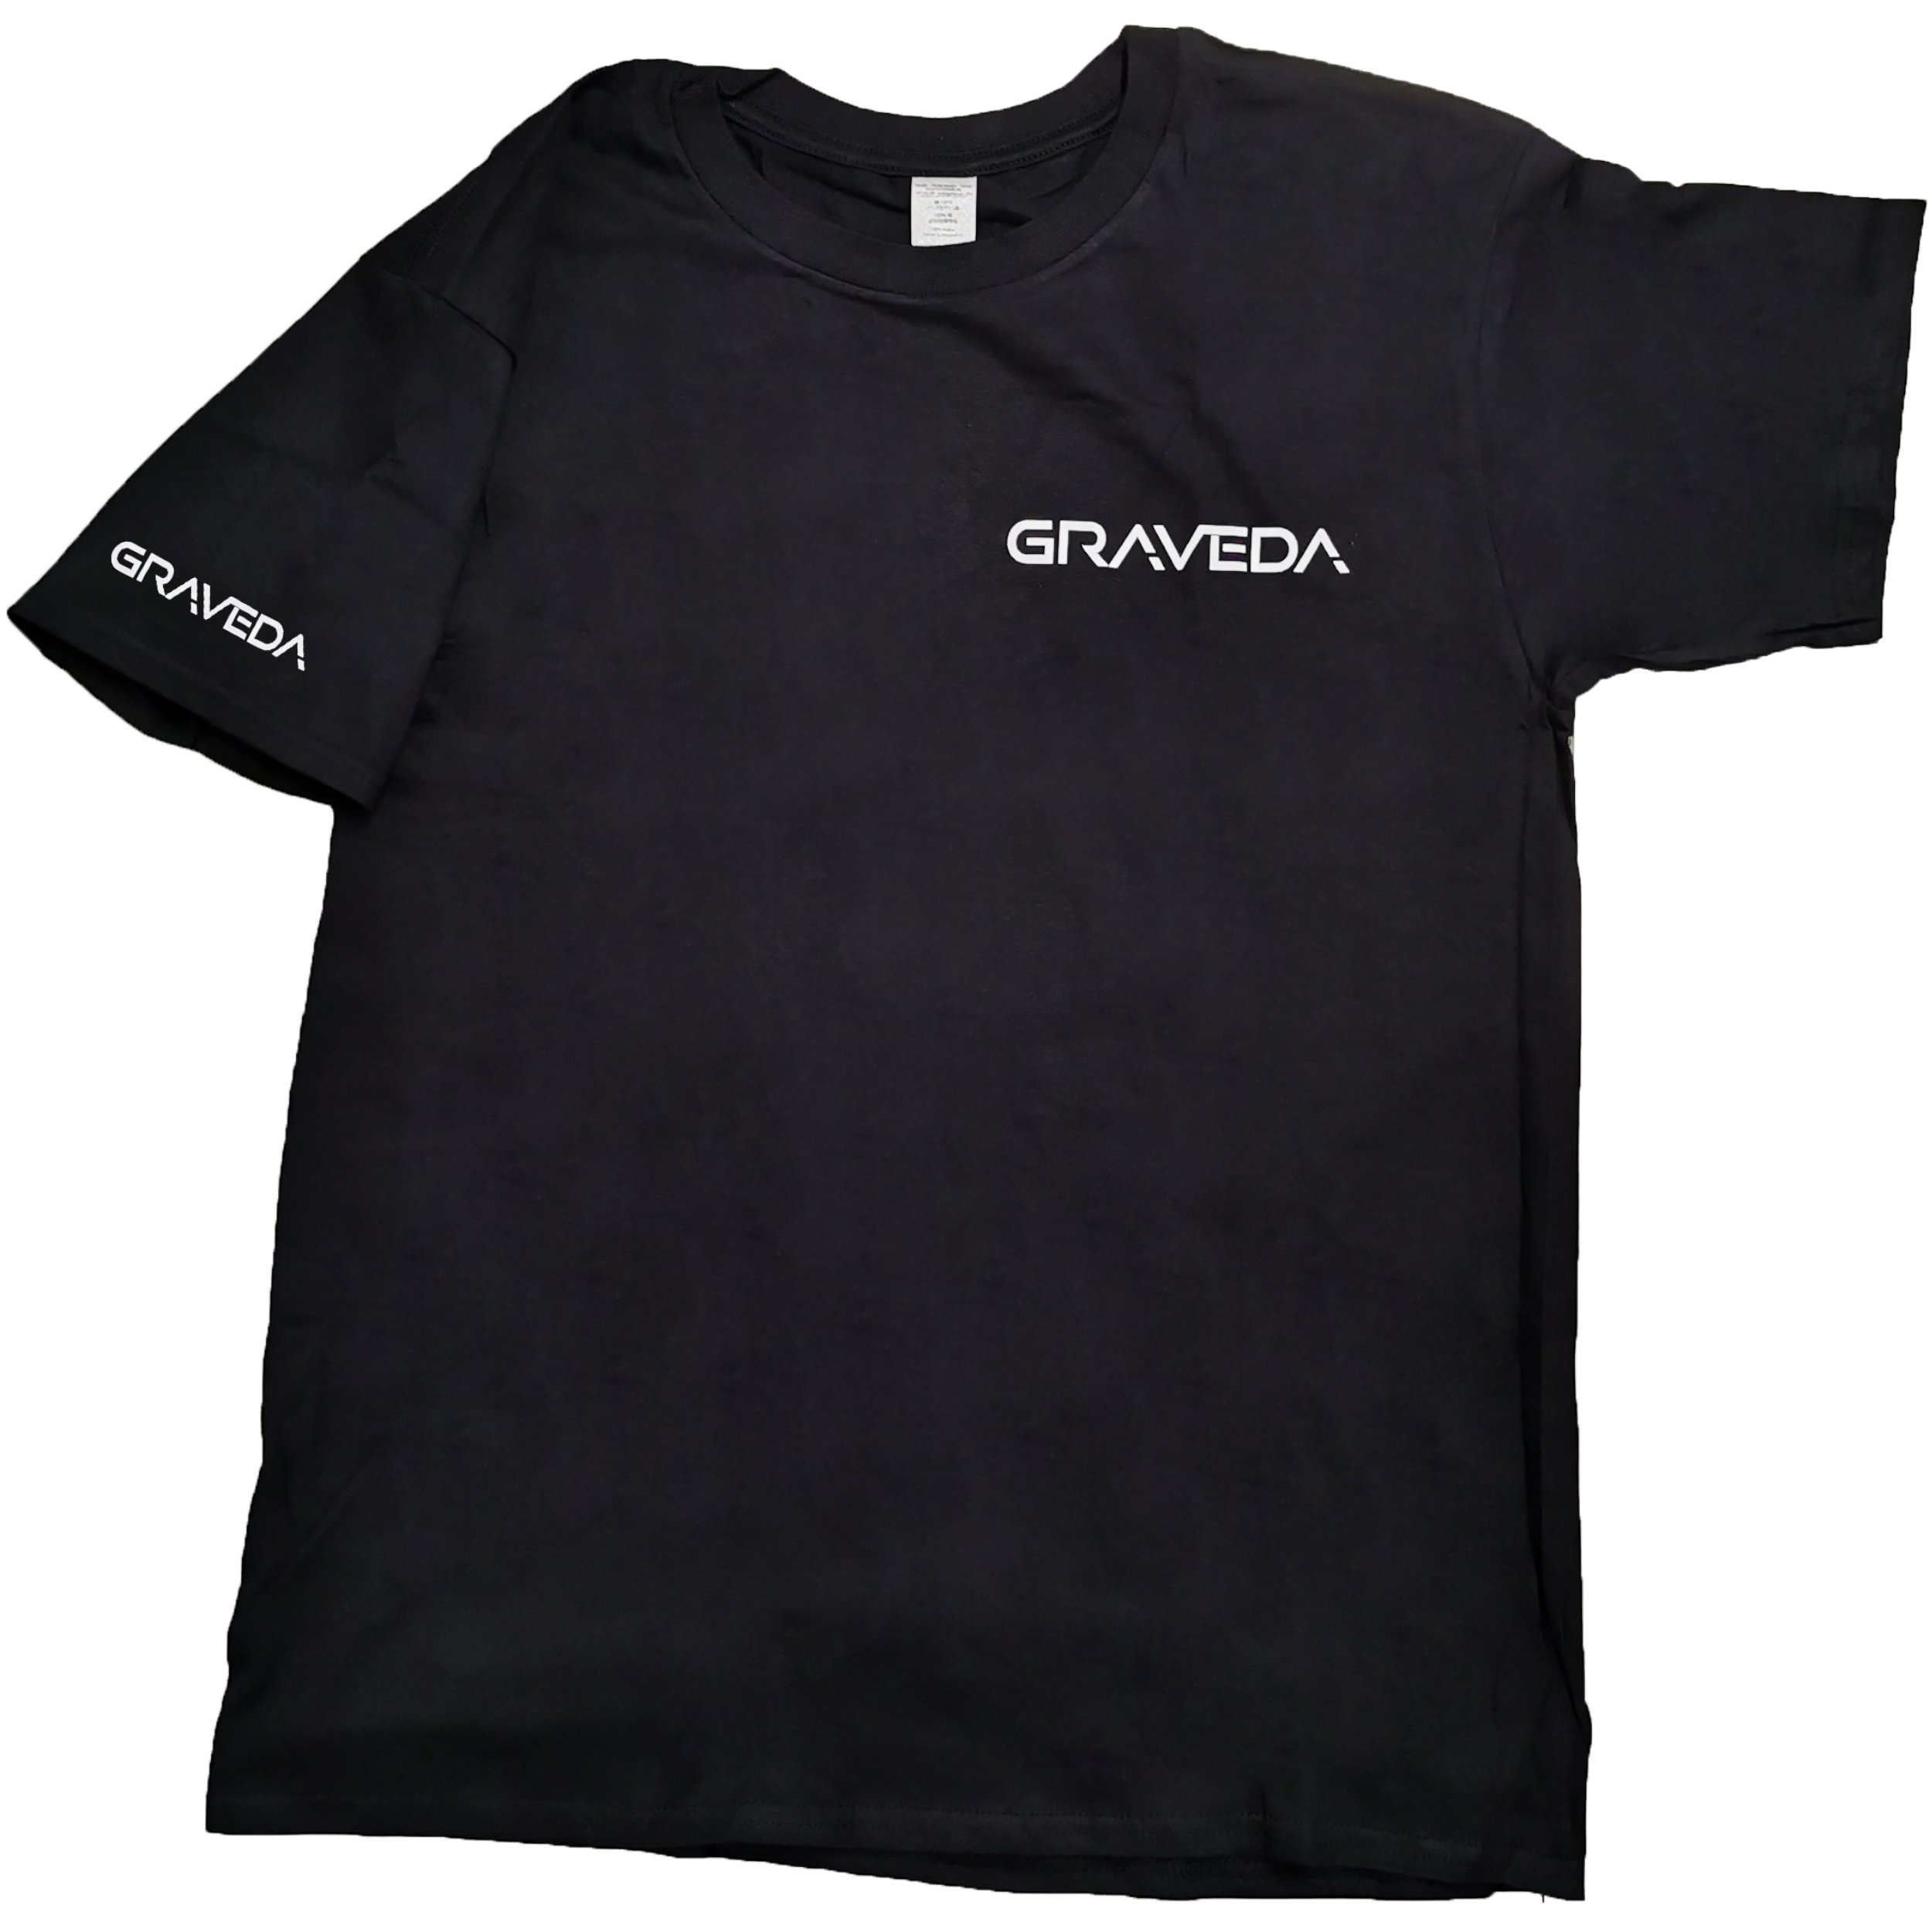 Graveda T-Shirt, 180g/m², in schwarz, grau oder weiß